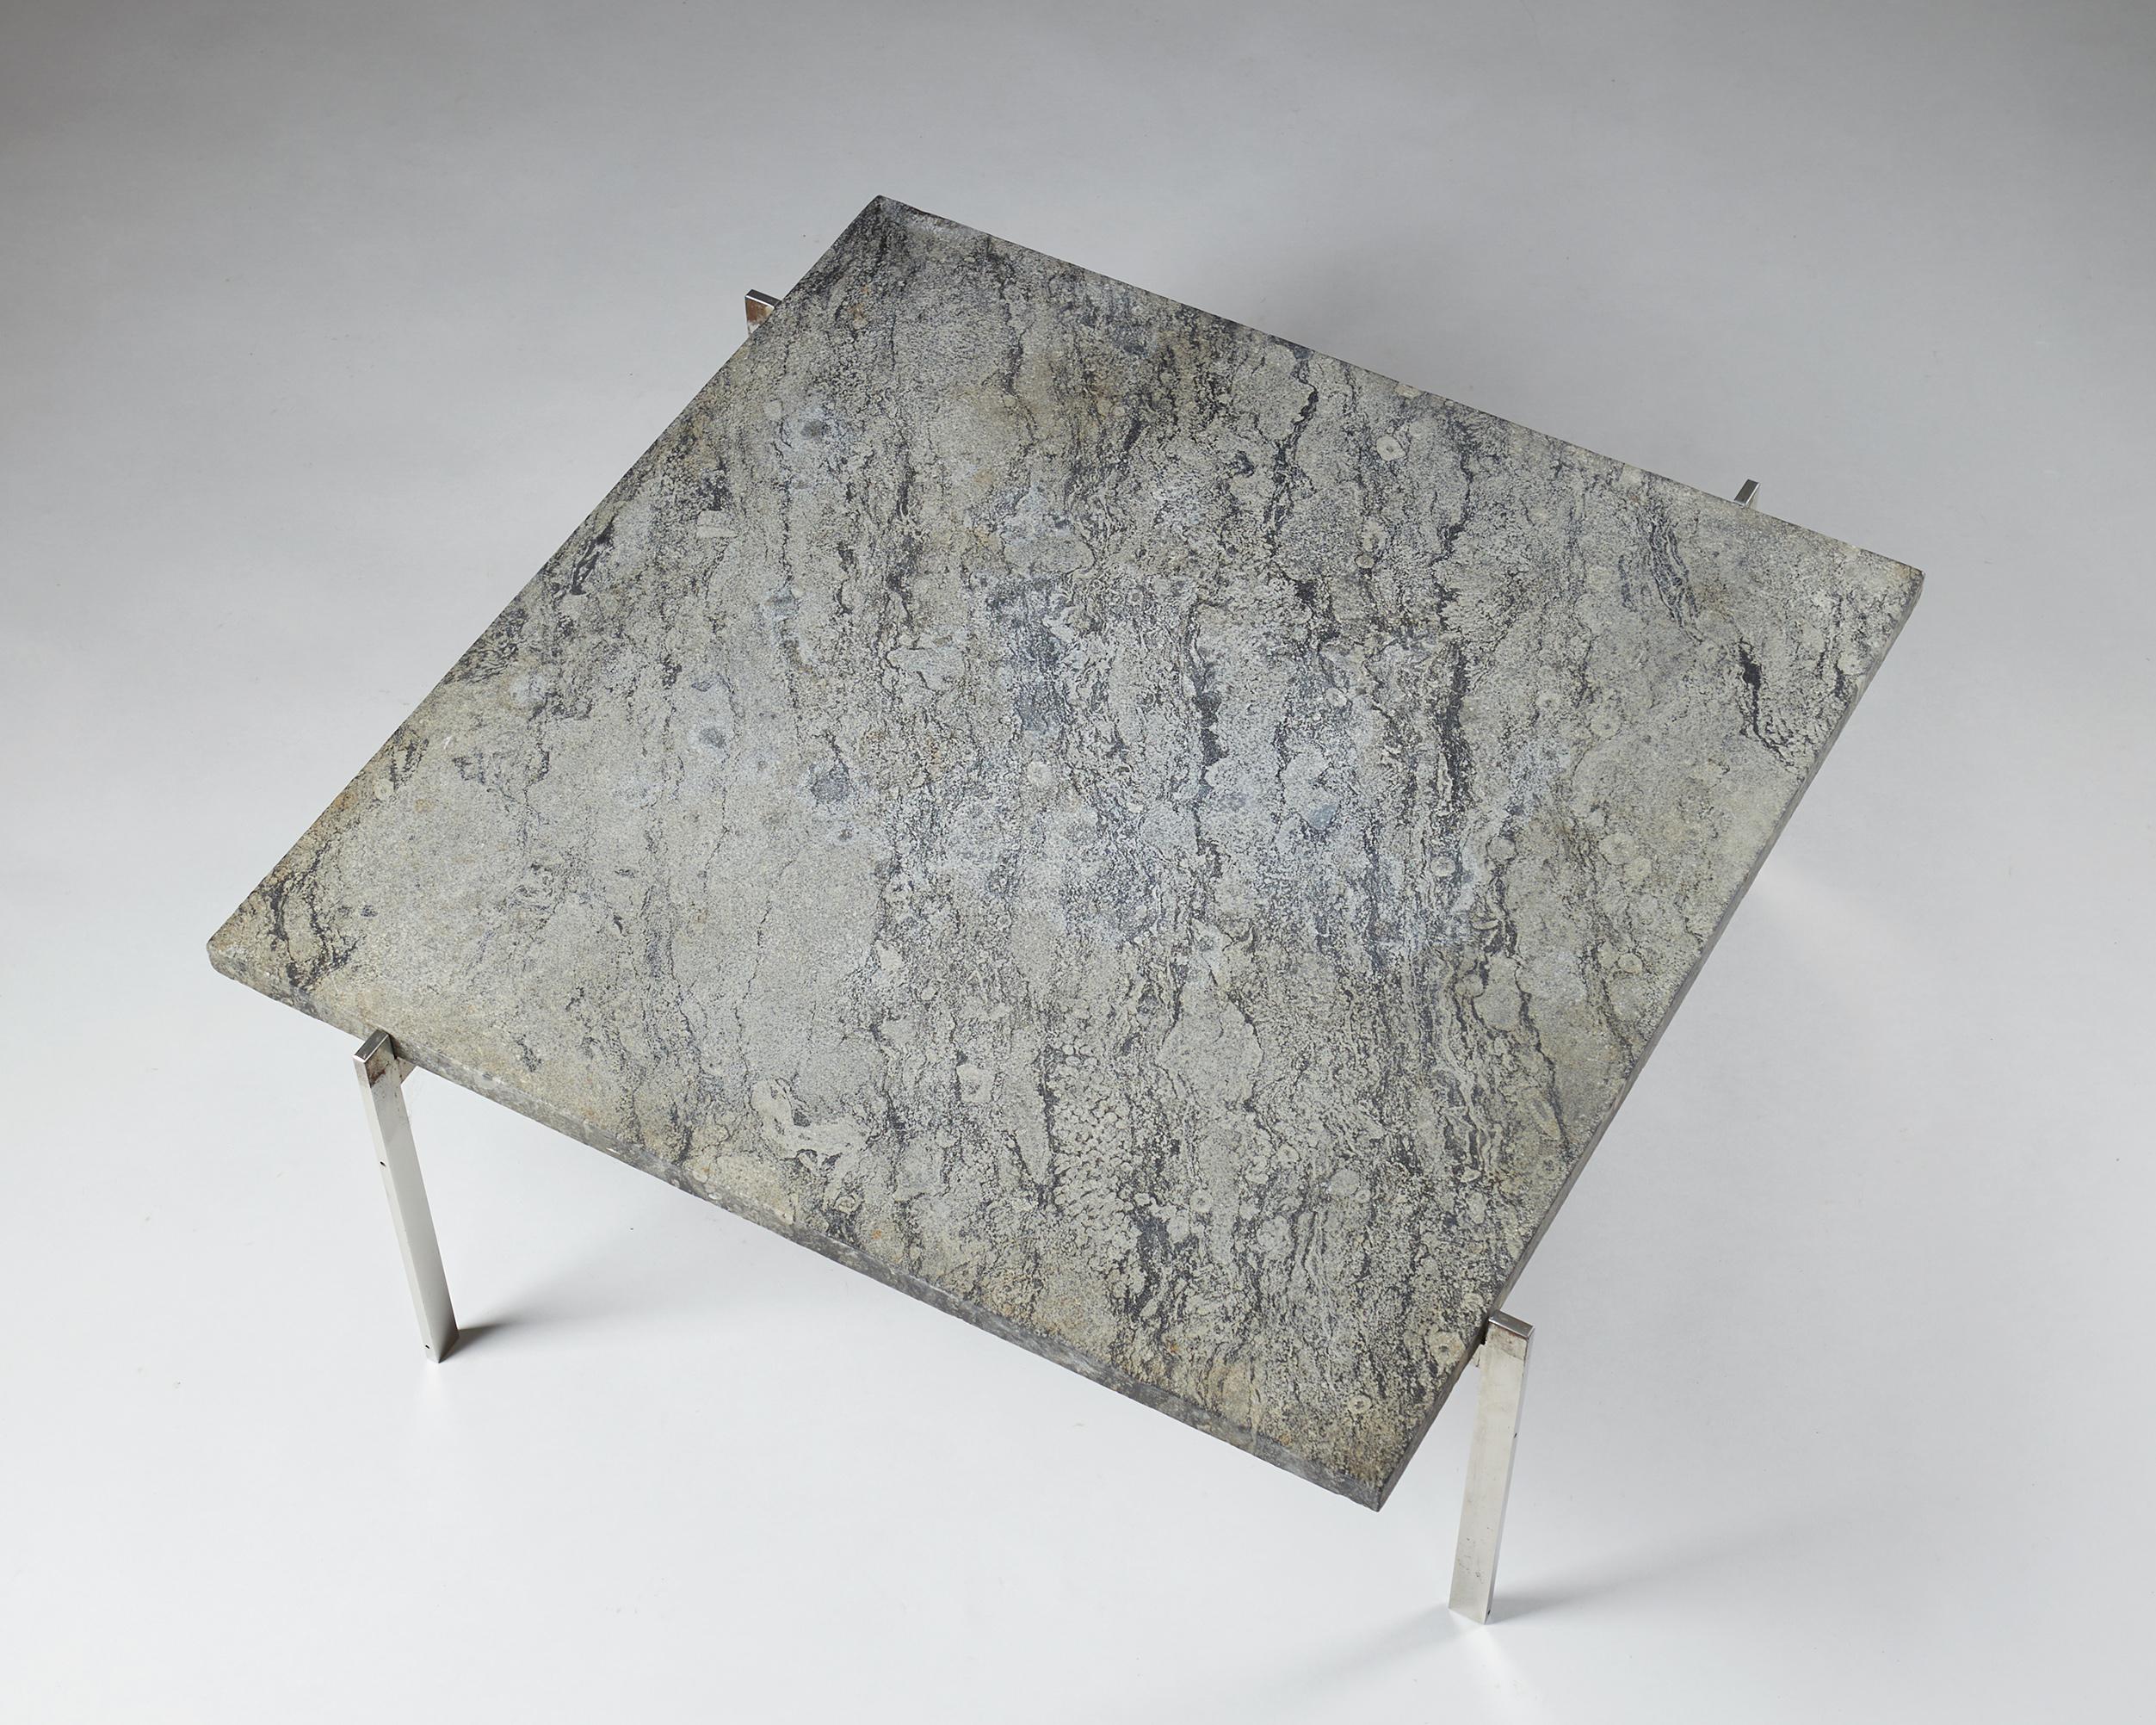 Occasional table PK61 designed by Poul Kjaerholm for E. Kold Christensen,
Denmark, 1956.

Steel and Porsgrunn marble with fossils.

H: 33 cm/ 13